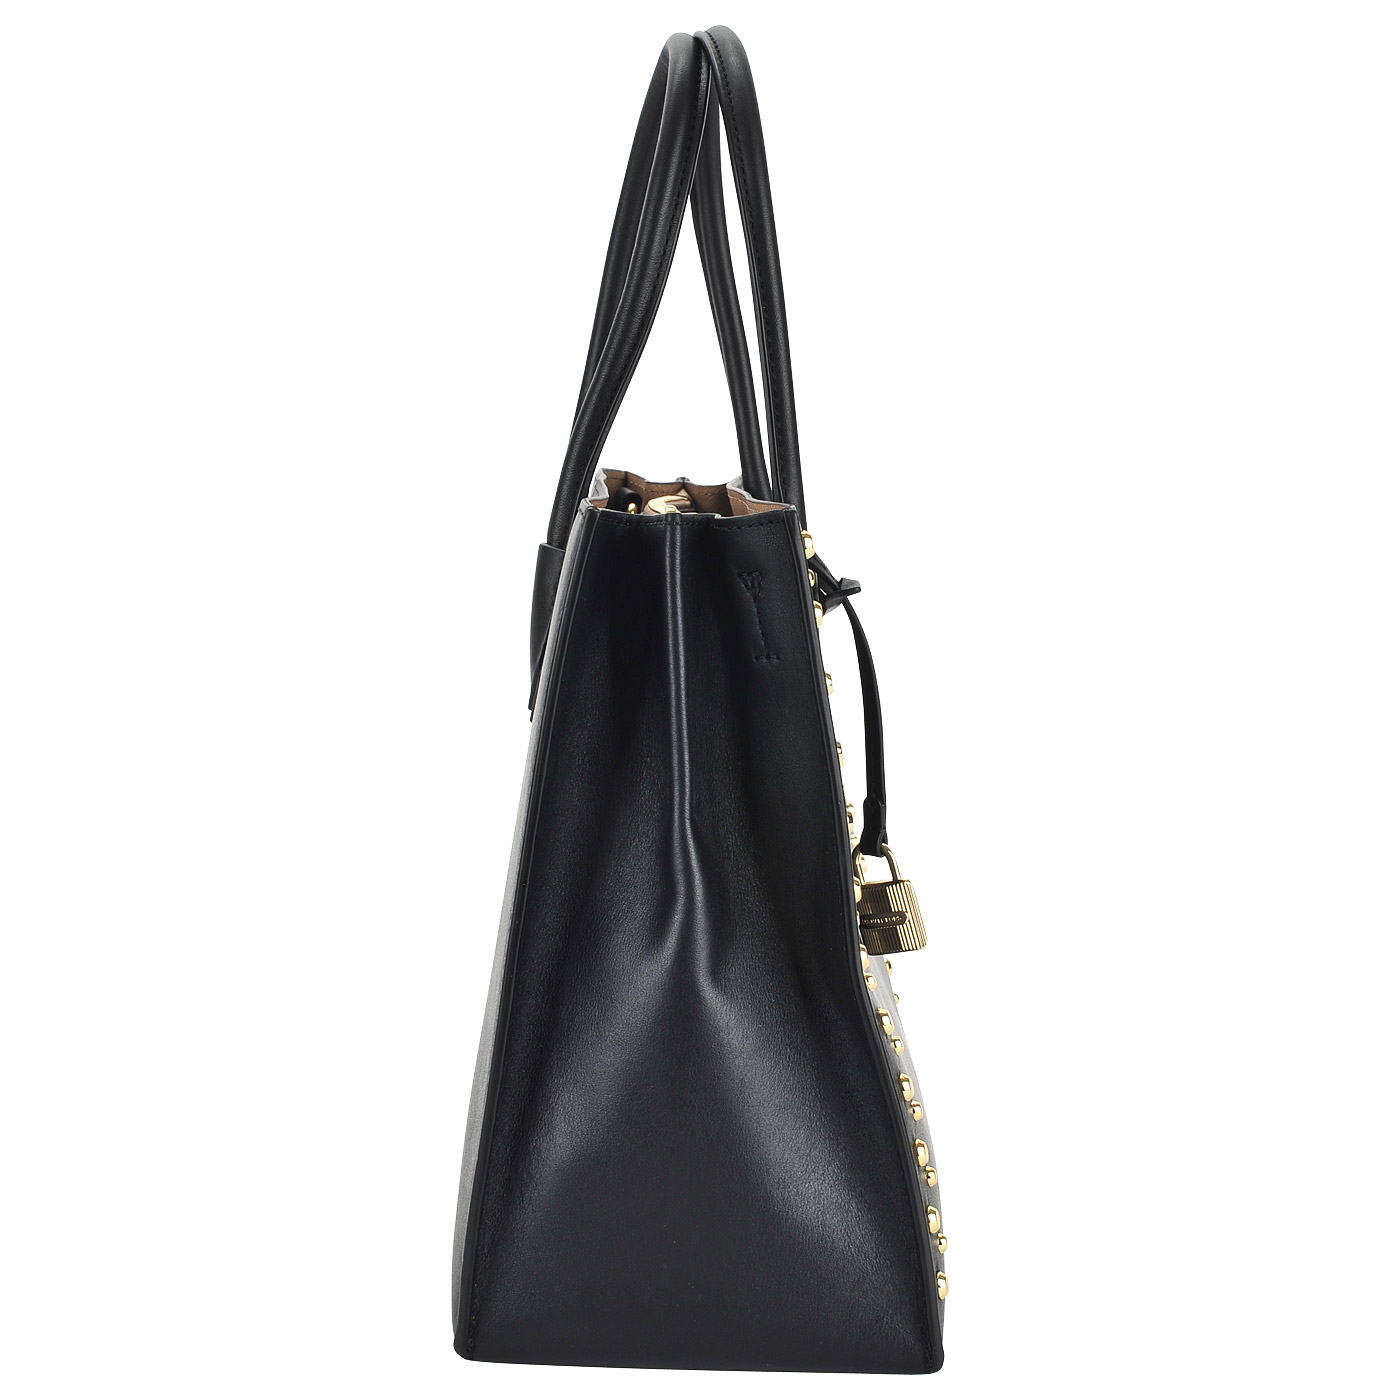 Женская кожаная сумка с декоративными клепками Michael Kors Mercer